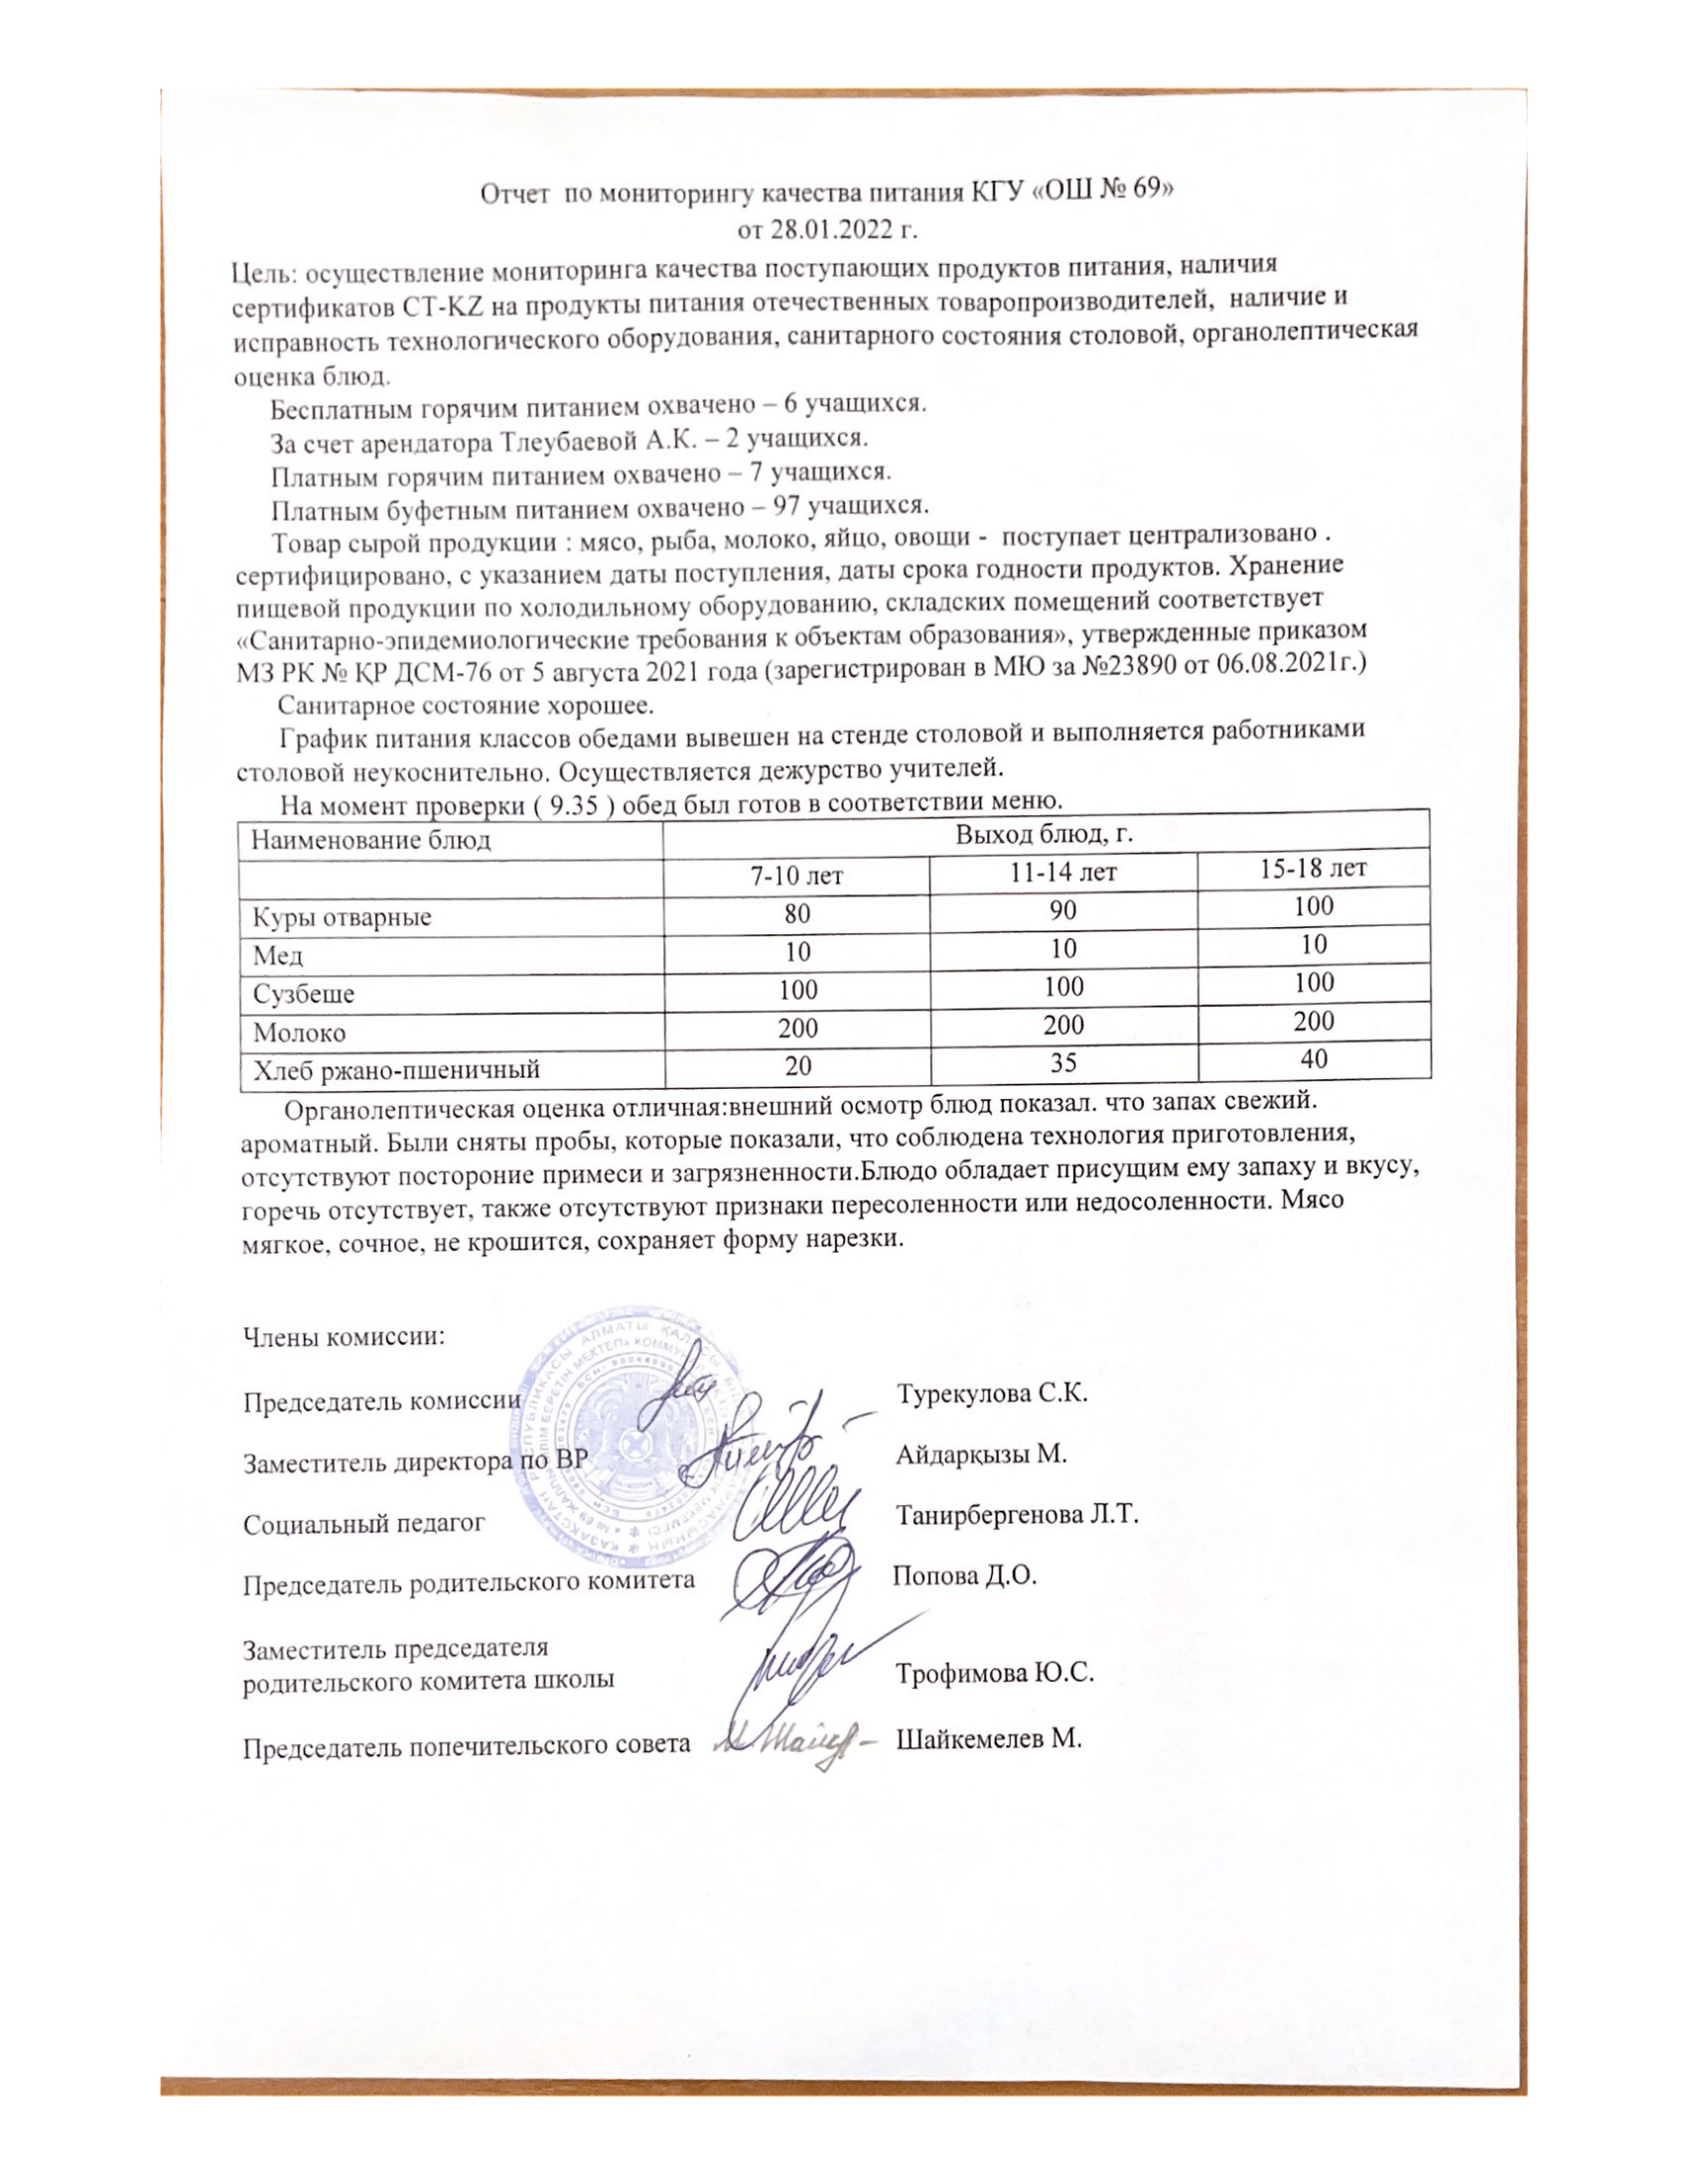 Отчет по мониторингу качество питания КГУ ОШ №69 от 28.01.2022 г.